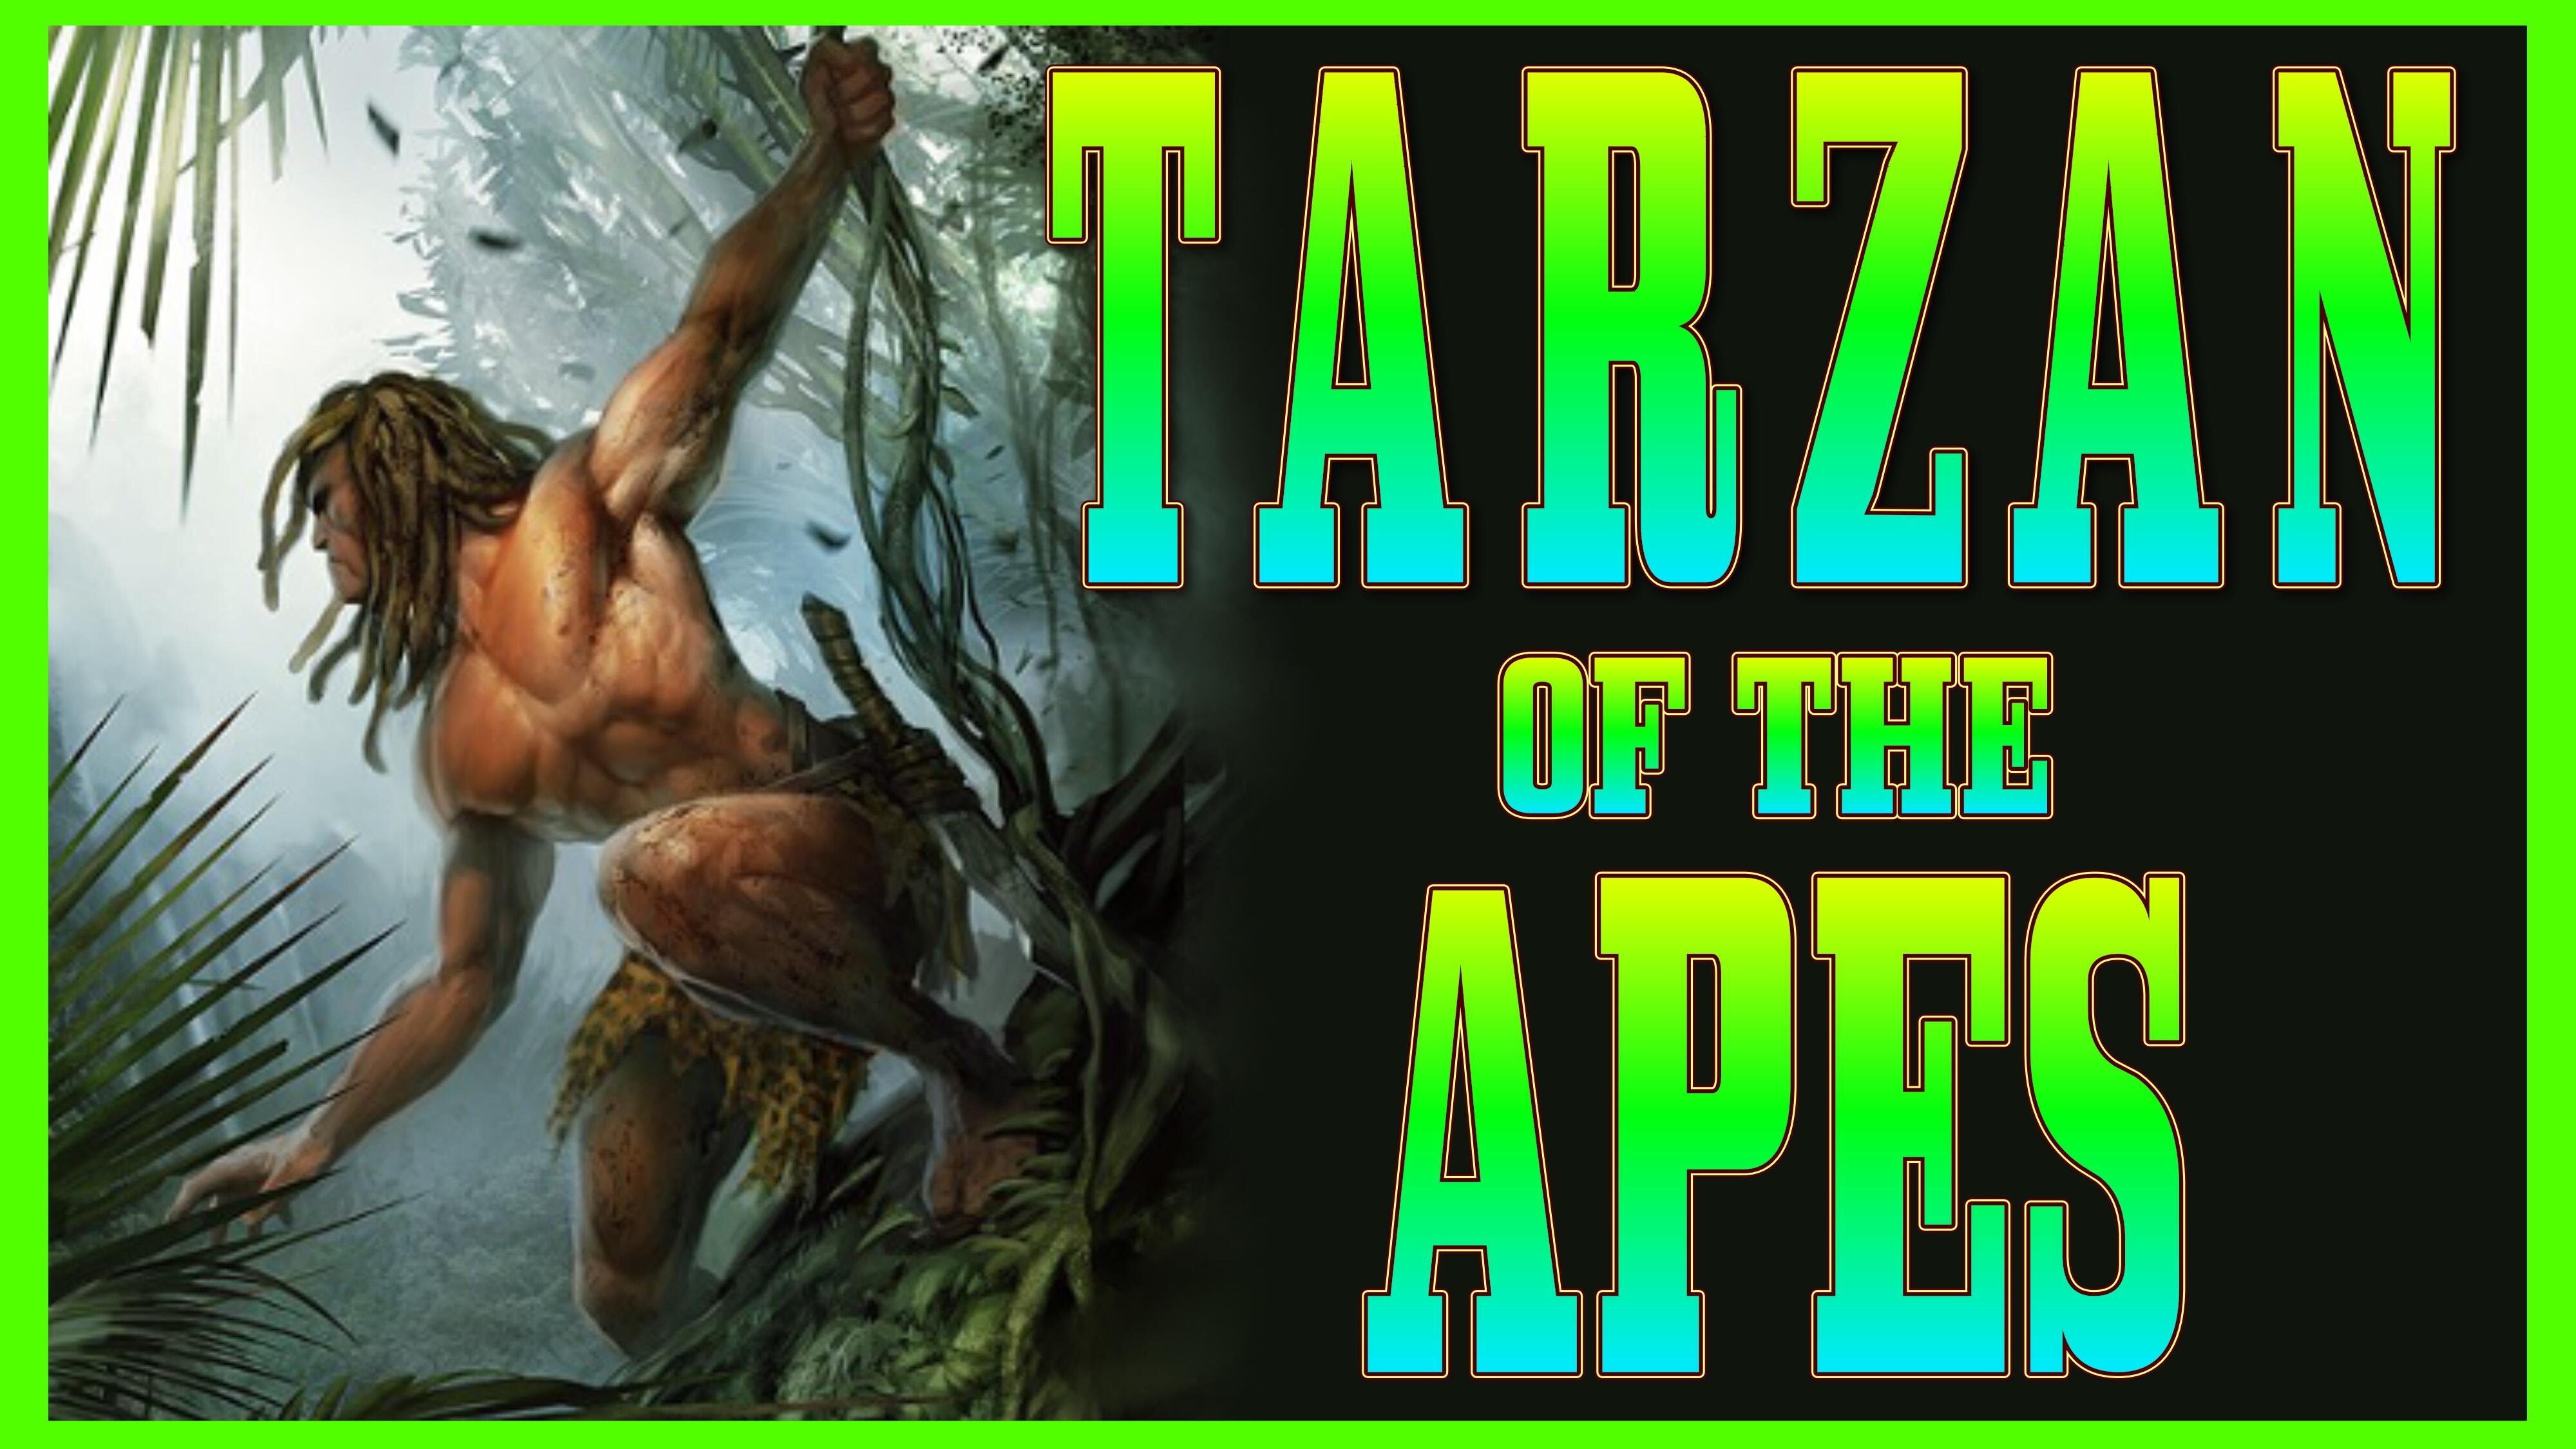 Analysis Of The Movie Tarzan The Ape